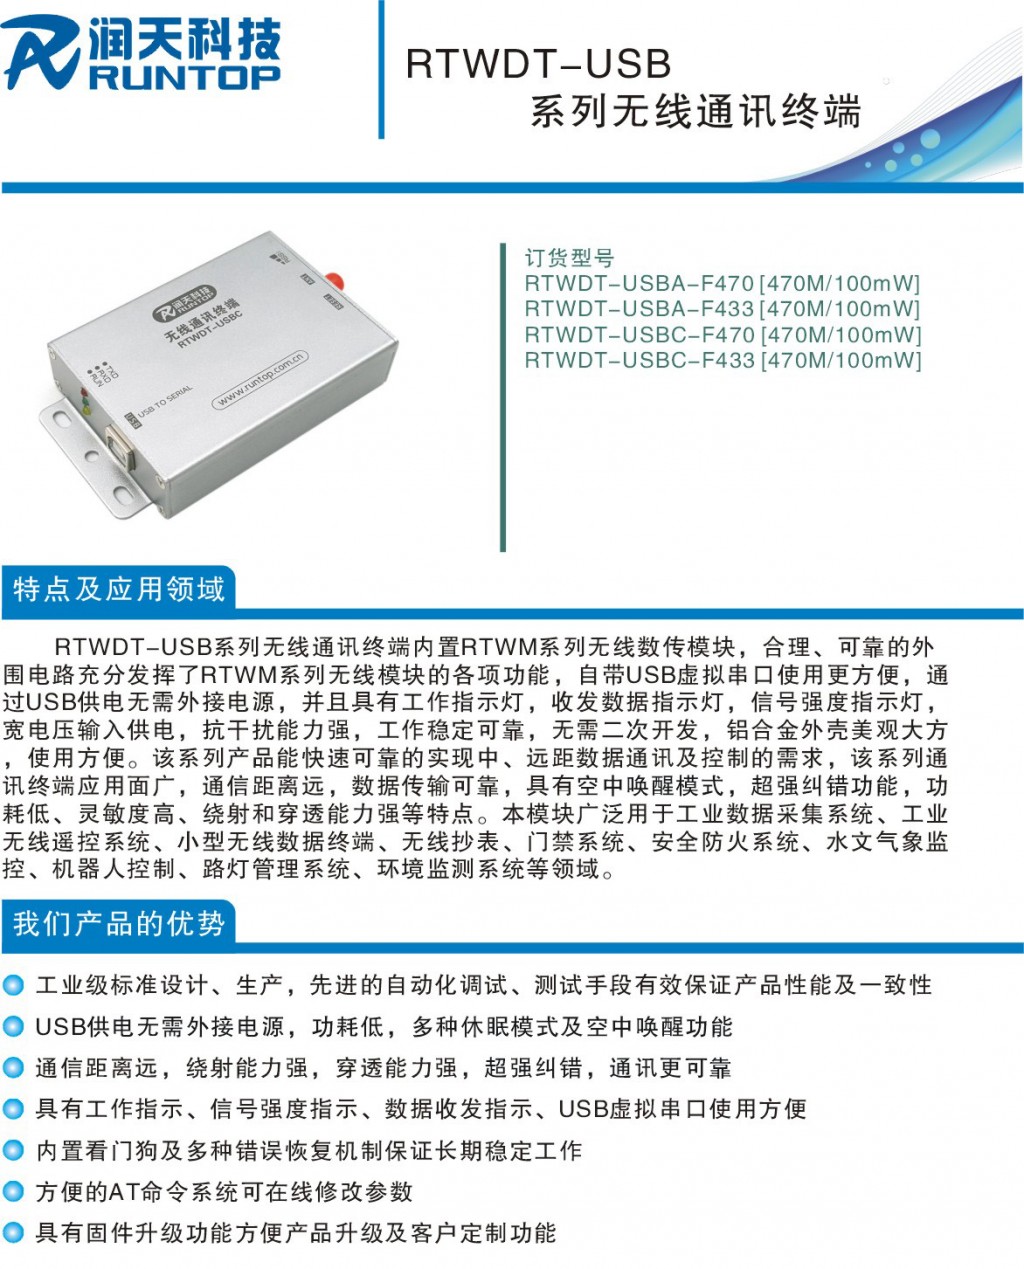 RTWDT-USB-P1-007